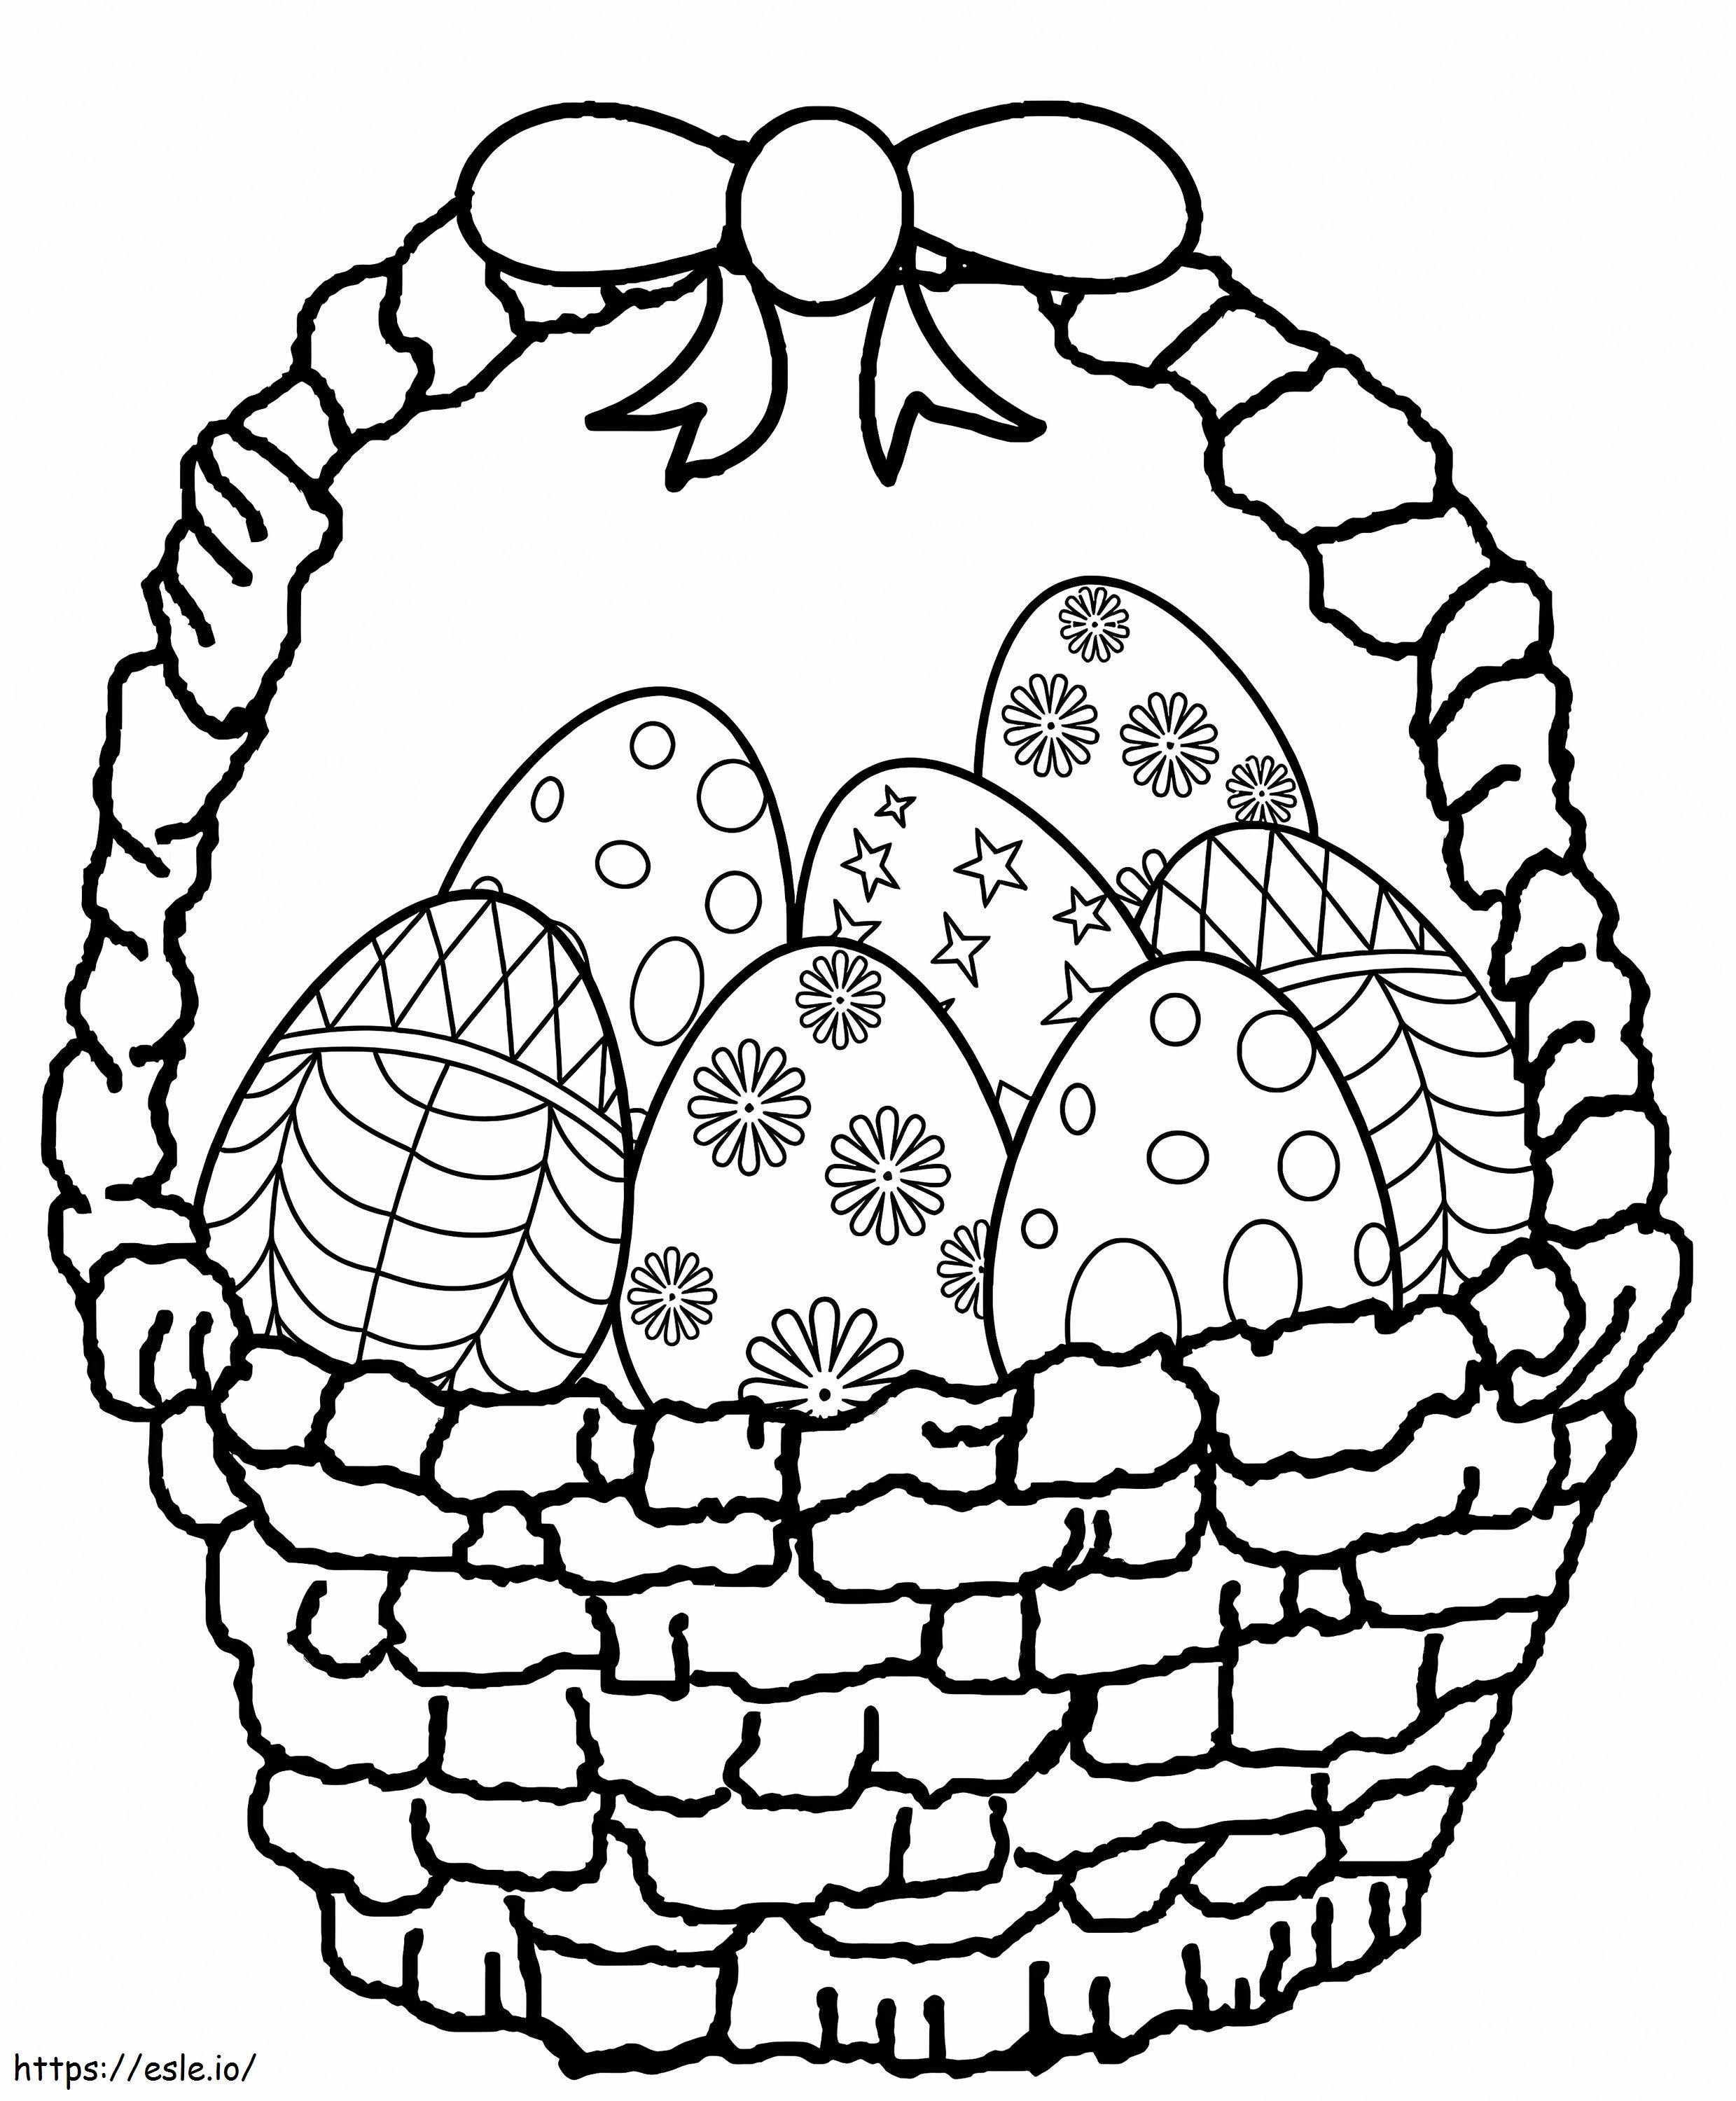 Wielkanocny Kosz Z Jajkami kolorowanka